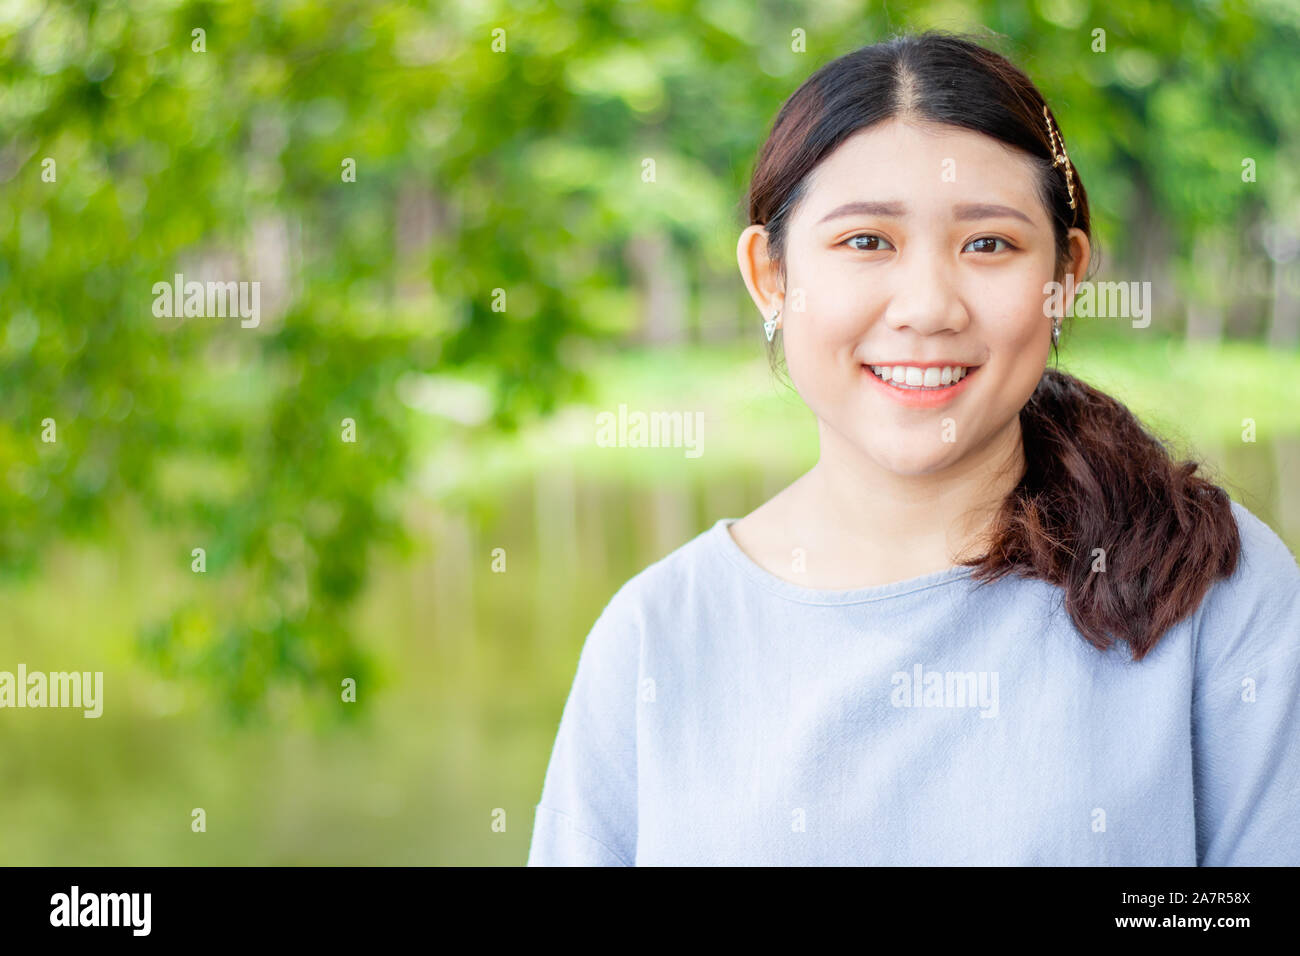 Image ado asiatique unique cute girl smiling green nature plein air avec de l'espace pour le texte. Banque D'Images